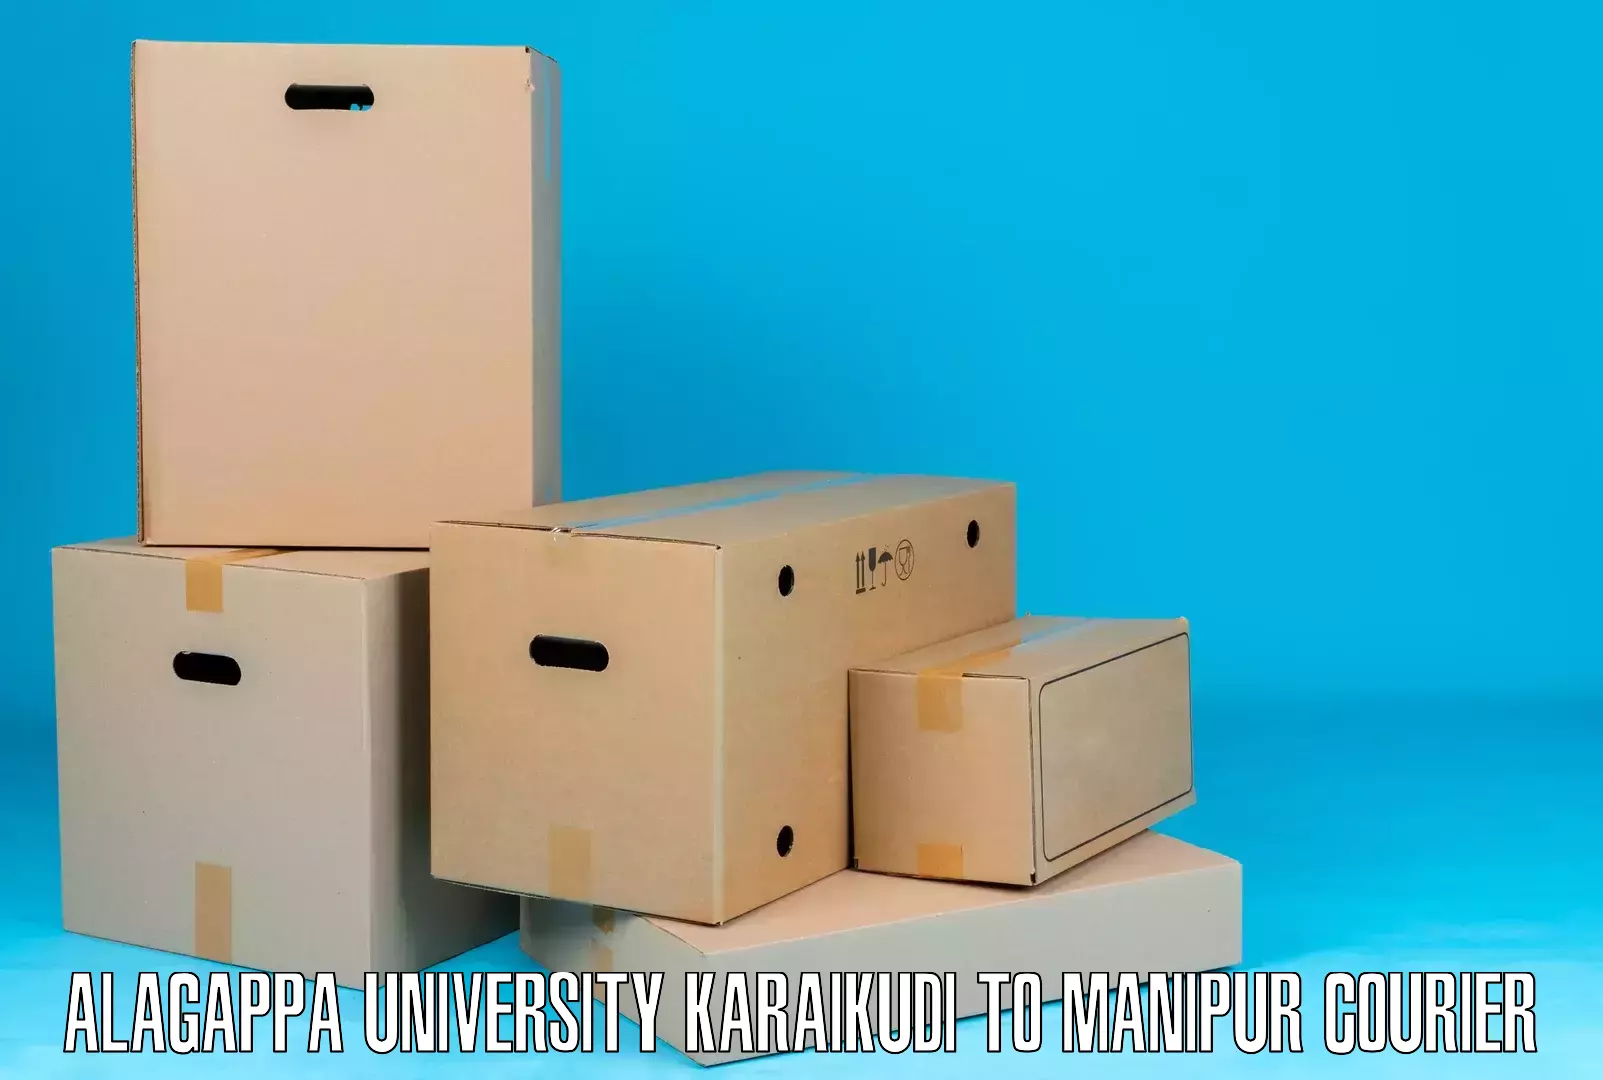 Cash on delivery service Alagappa University Karaikudi to NIT Manipur